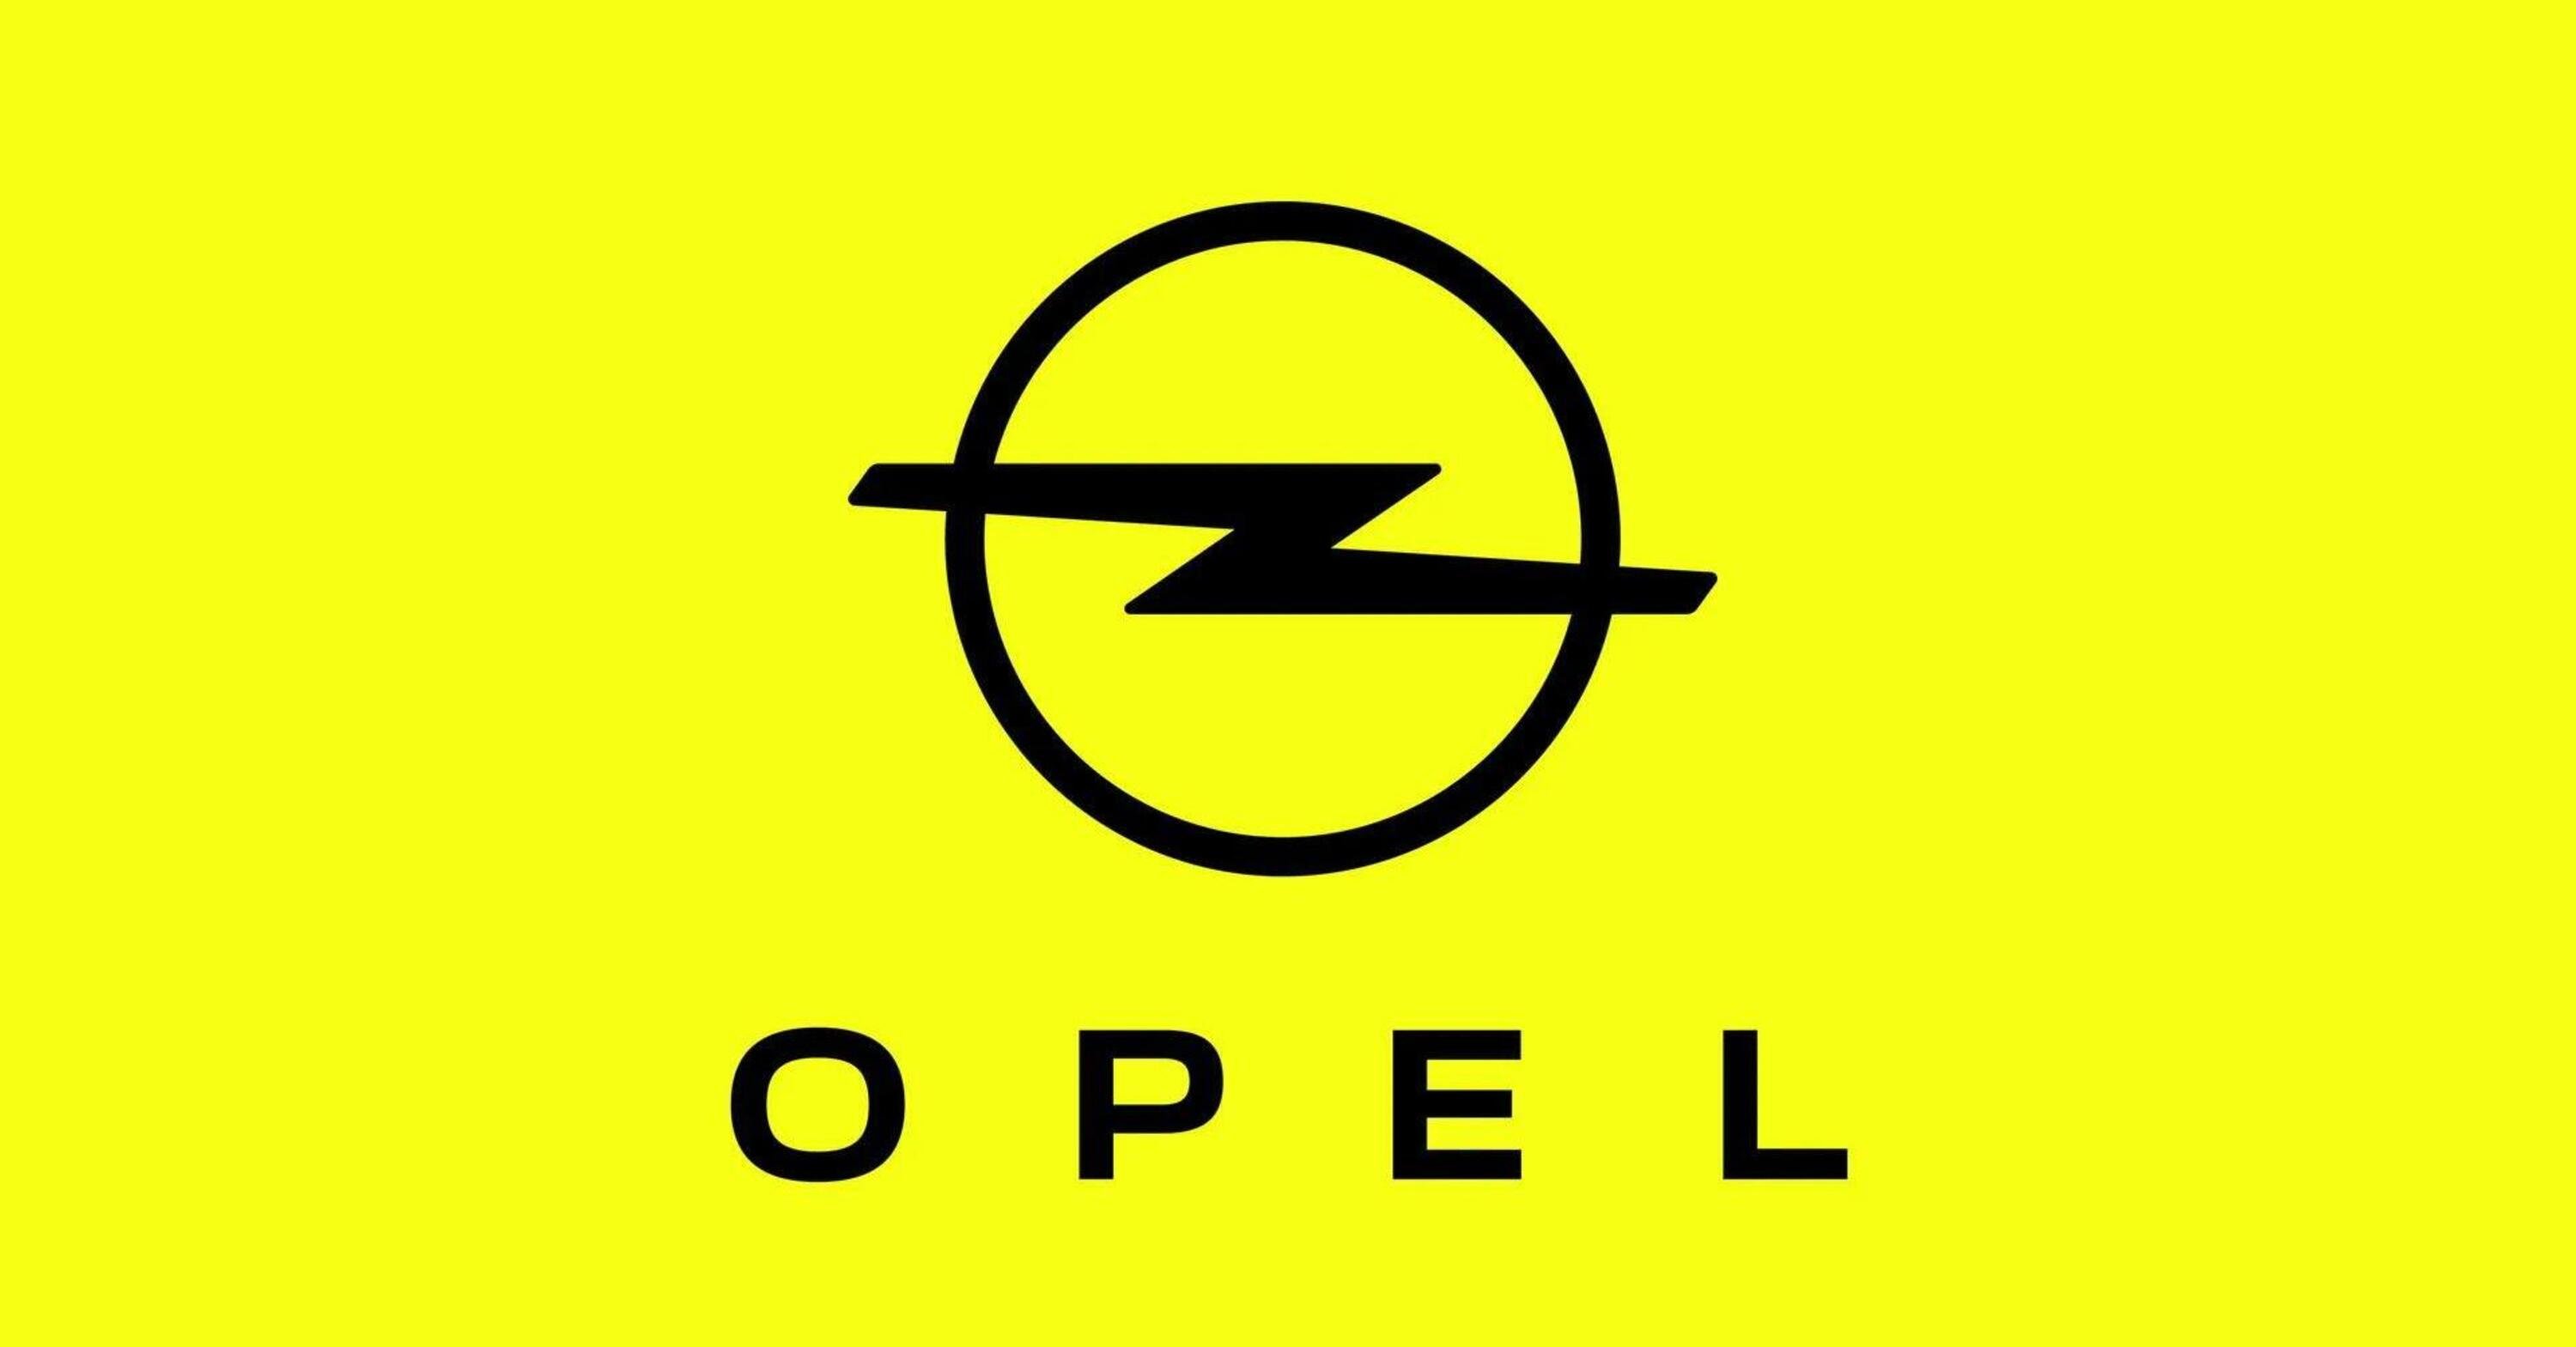 Opel ammette: in Cina ci sono problemi, e blocca tutto